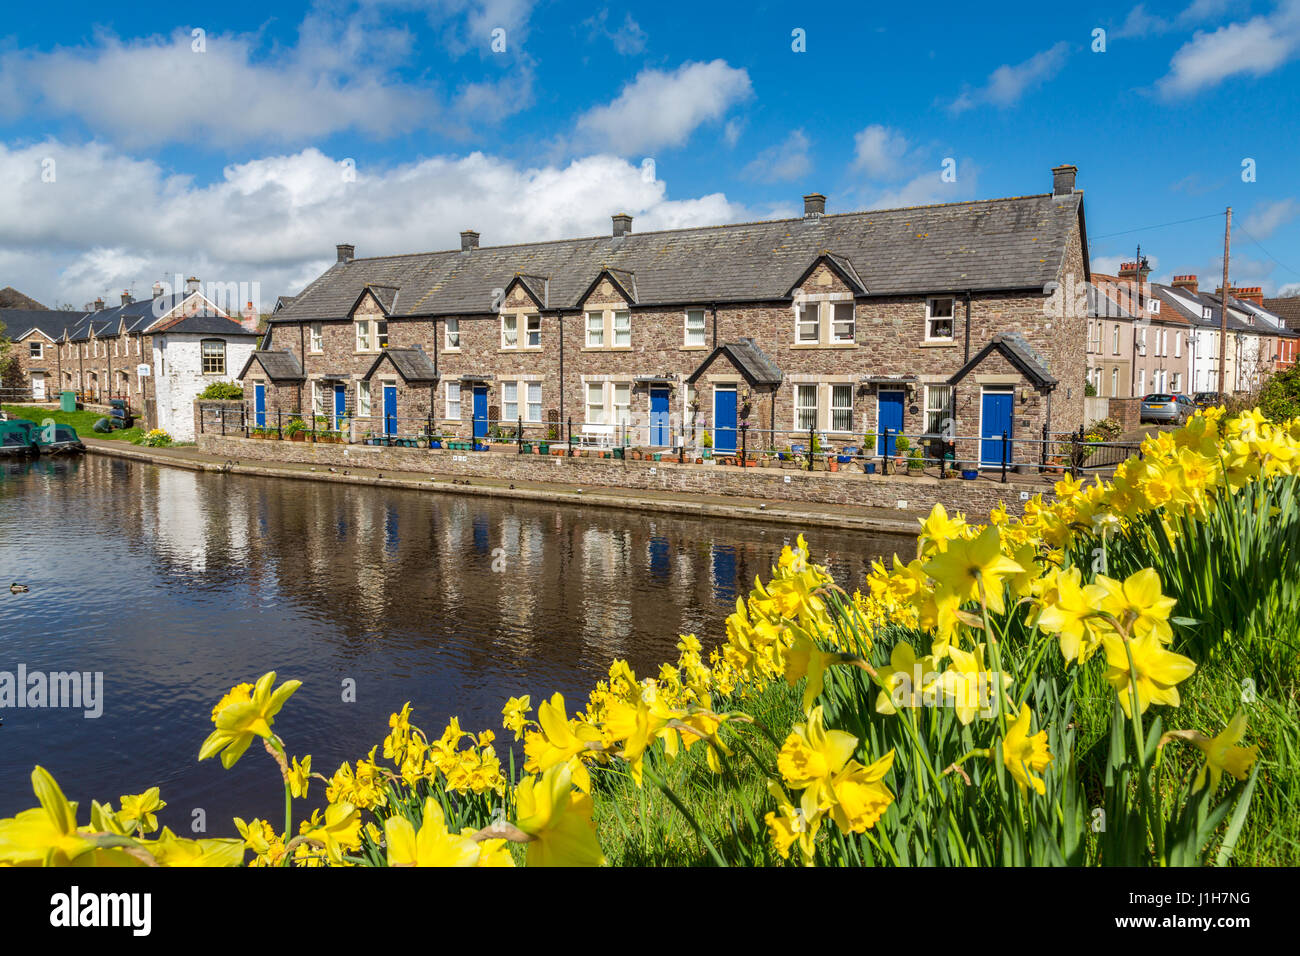 La parte restaurada de la cuenca de Brecon del Monmouthshire y el canal de Brecon con con narcisos de color amarillo brillante el Parque Nacional Brecon Breacons South Wales UK Foto de stock